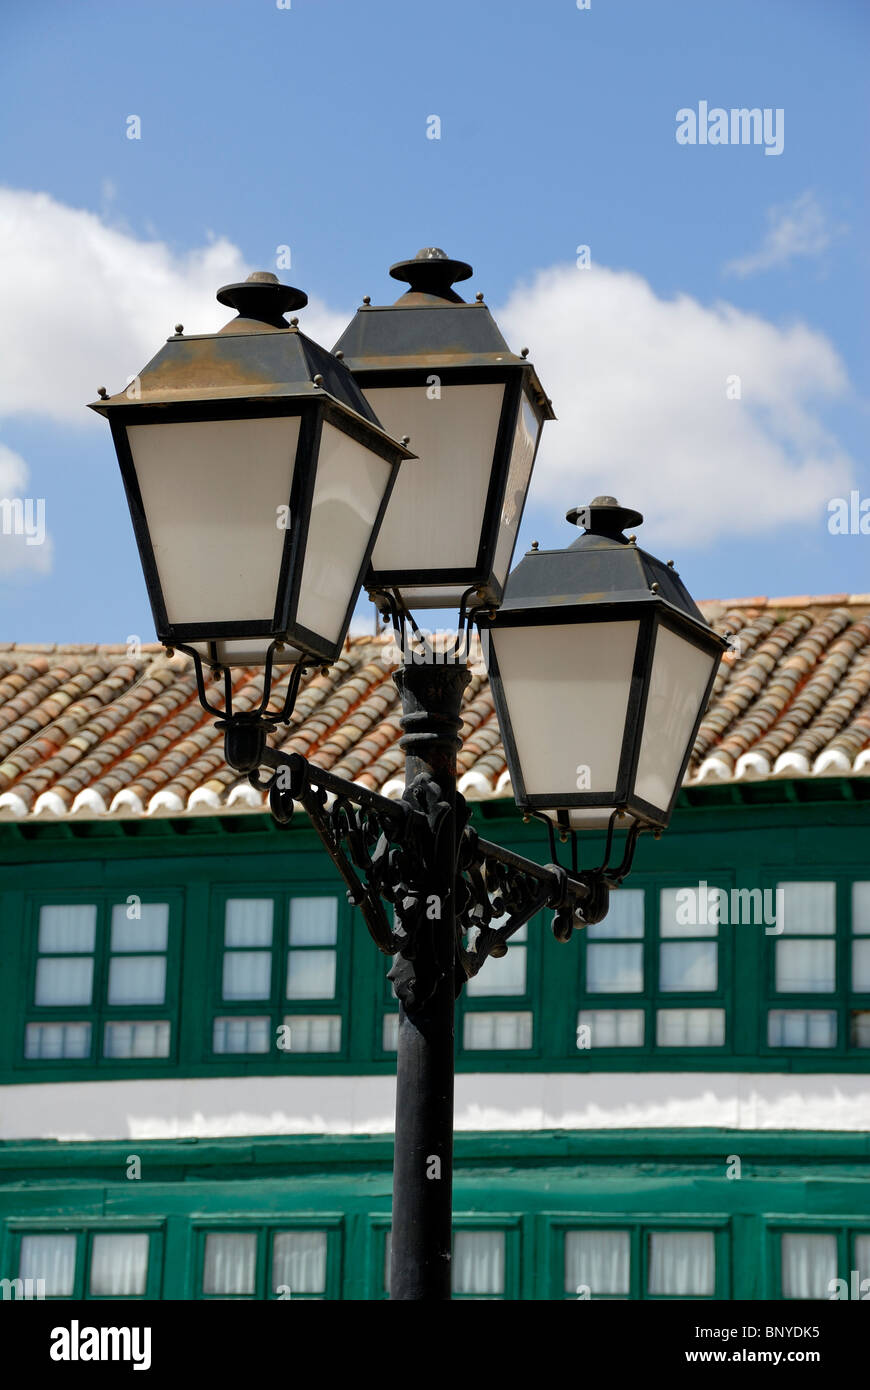 Almagro Plaza großen Main Square, Ciudad Real Provinz Kastilien-La Mancha, Spanien Stockfoto